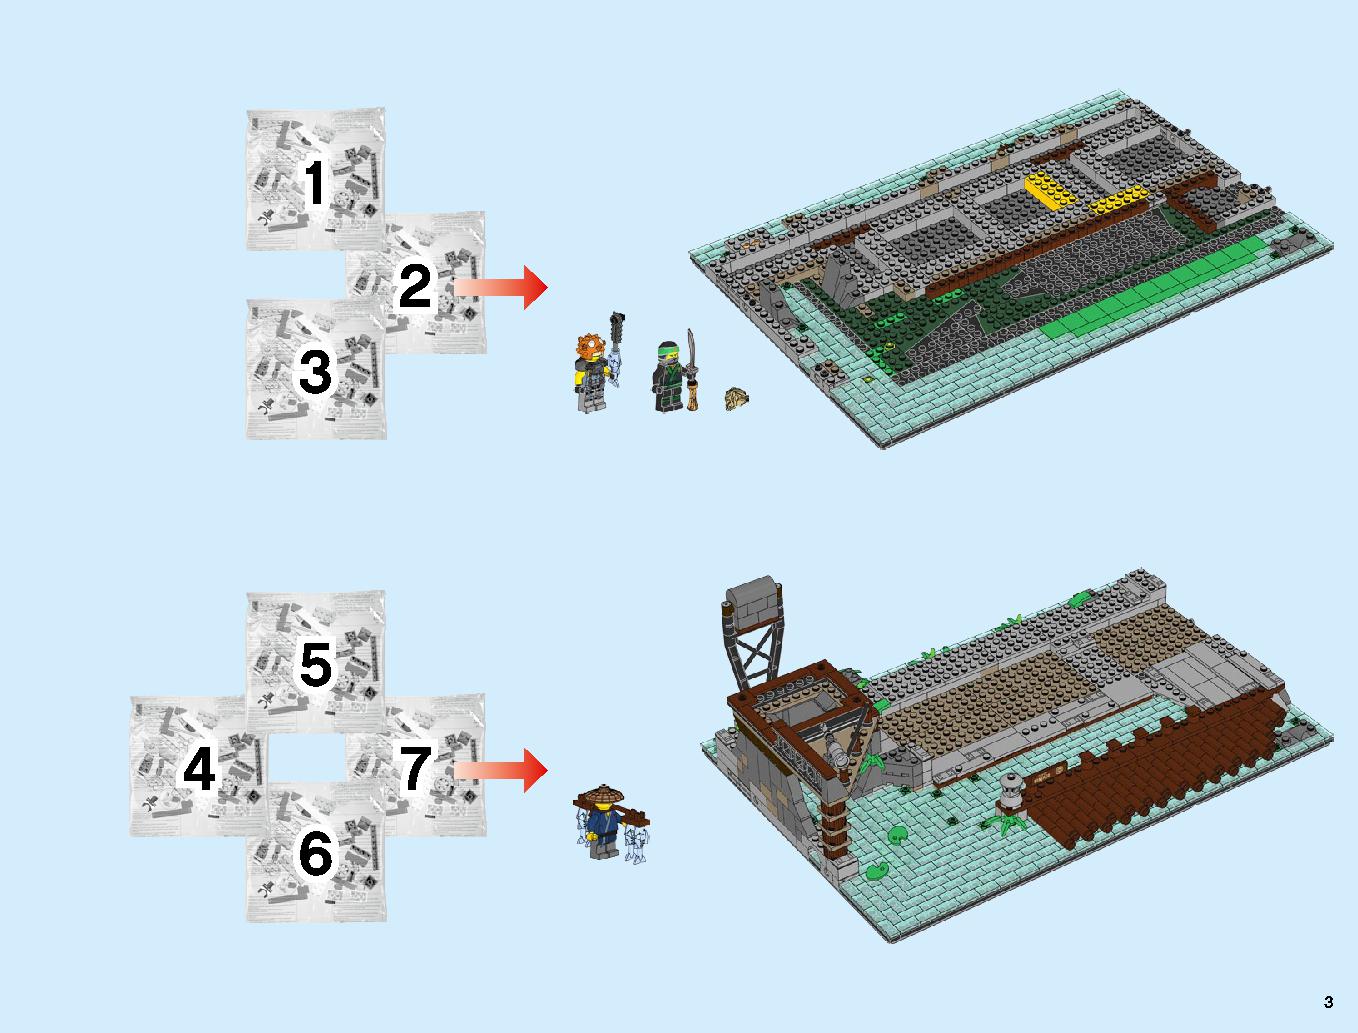 ニンジャゴーシティ・ポートパーク 70657 レゴの商品情報 レゴの説明書・組立方法 3 page